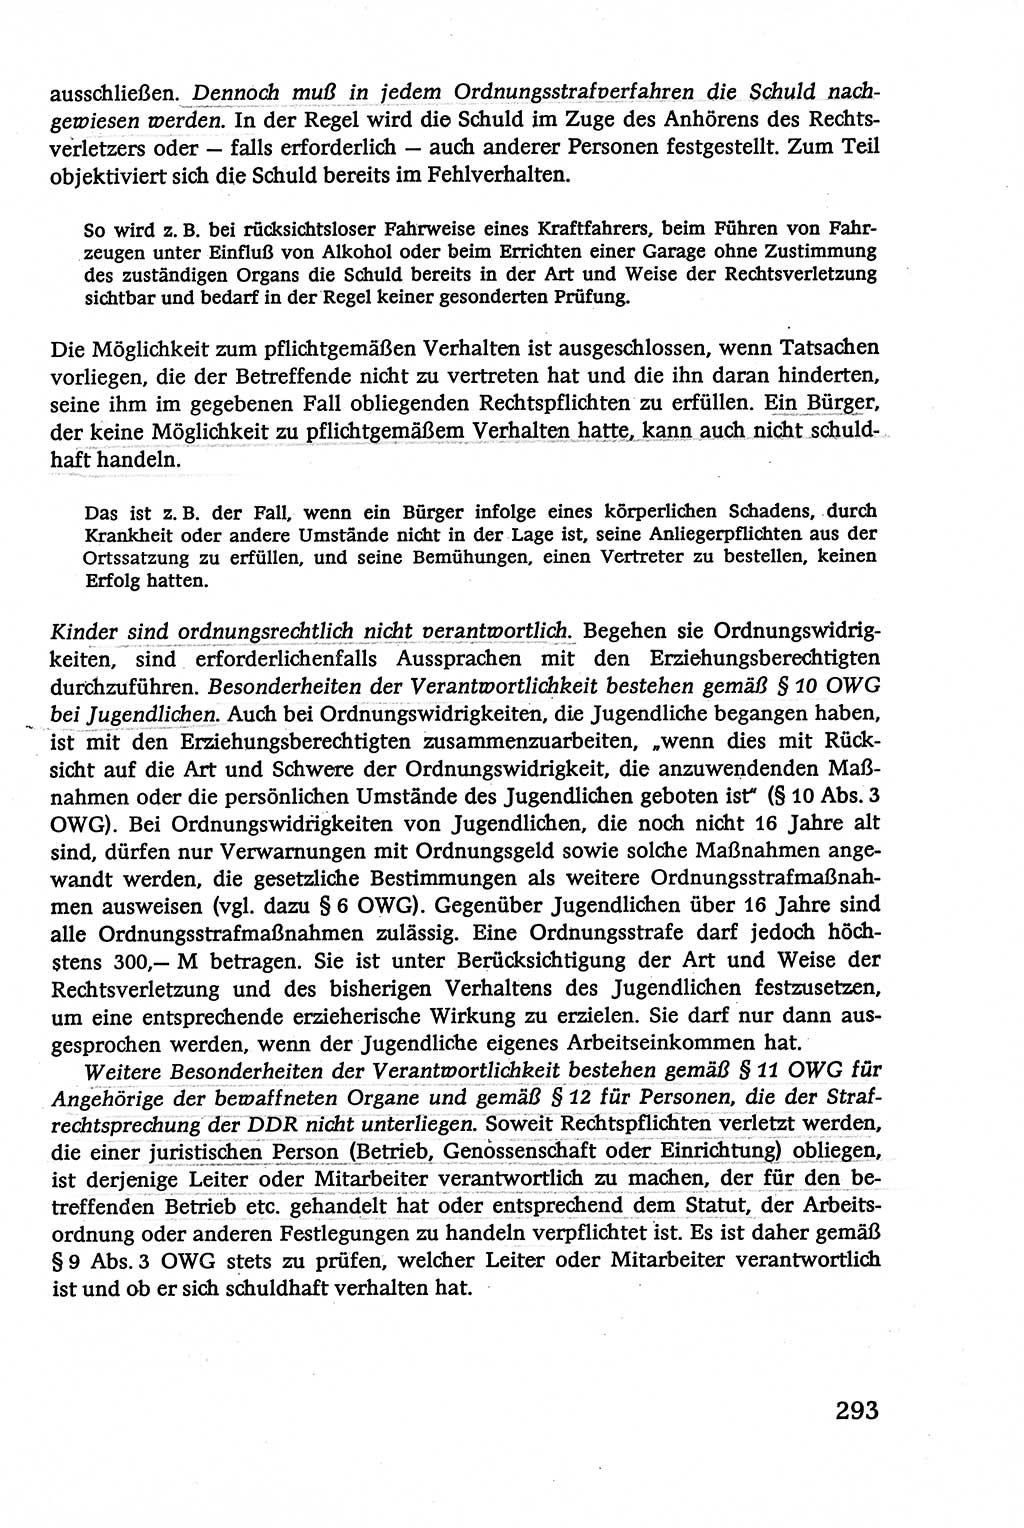 Verwaltungsrecht [Deutsche Demokratische Republik (DDR)], Lehrbuch 1979, Seite 293 (Verw.-R. DDR Lb. 1979, S. 293)